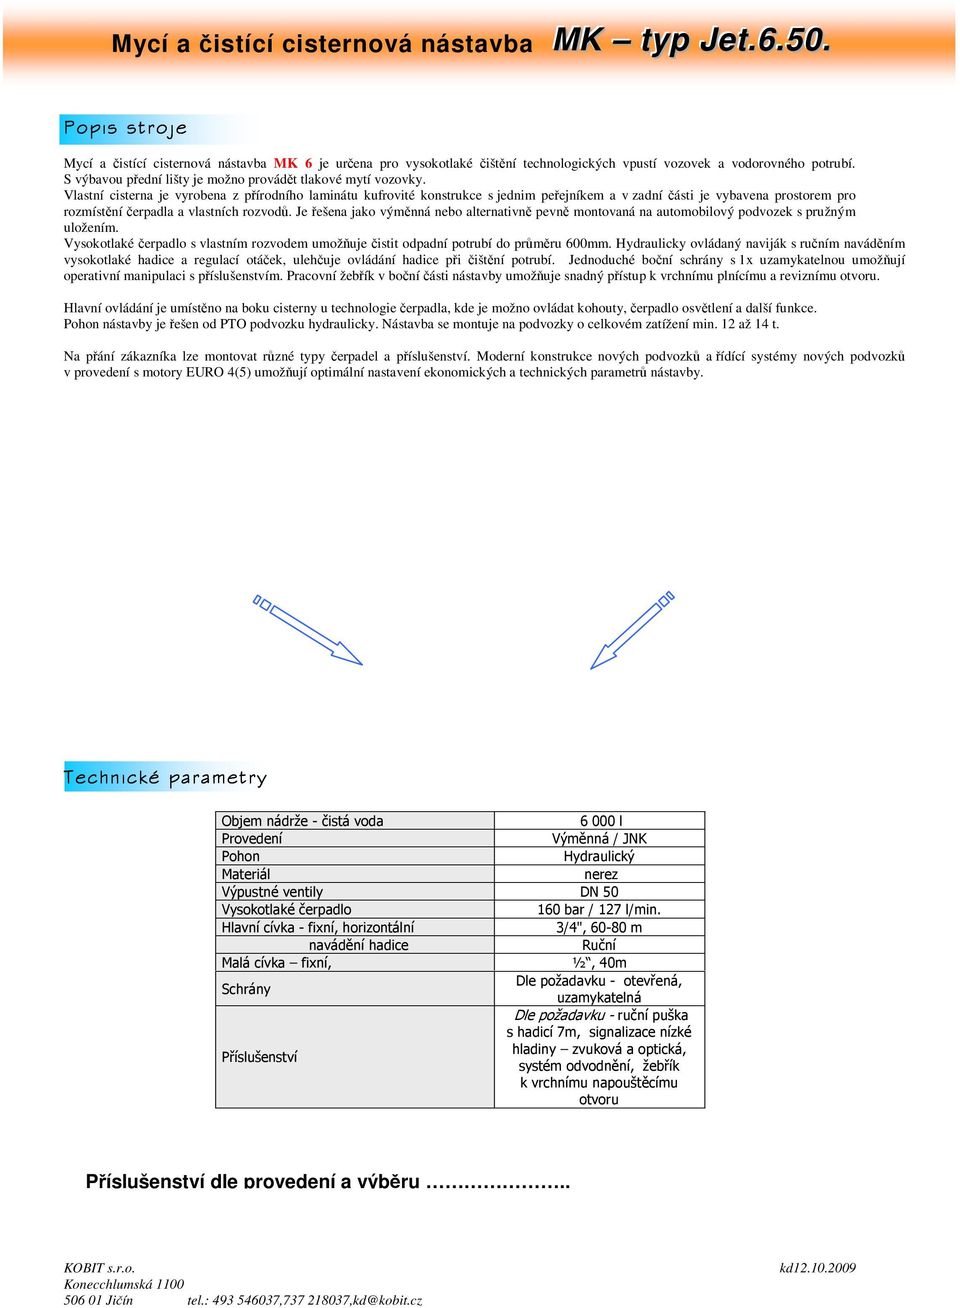 Popis stroje. Technické parametry. Příslušenství dle provedení a výběru.. -  PDF Free Download